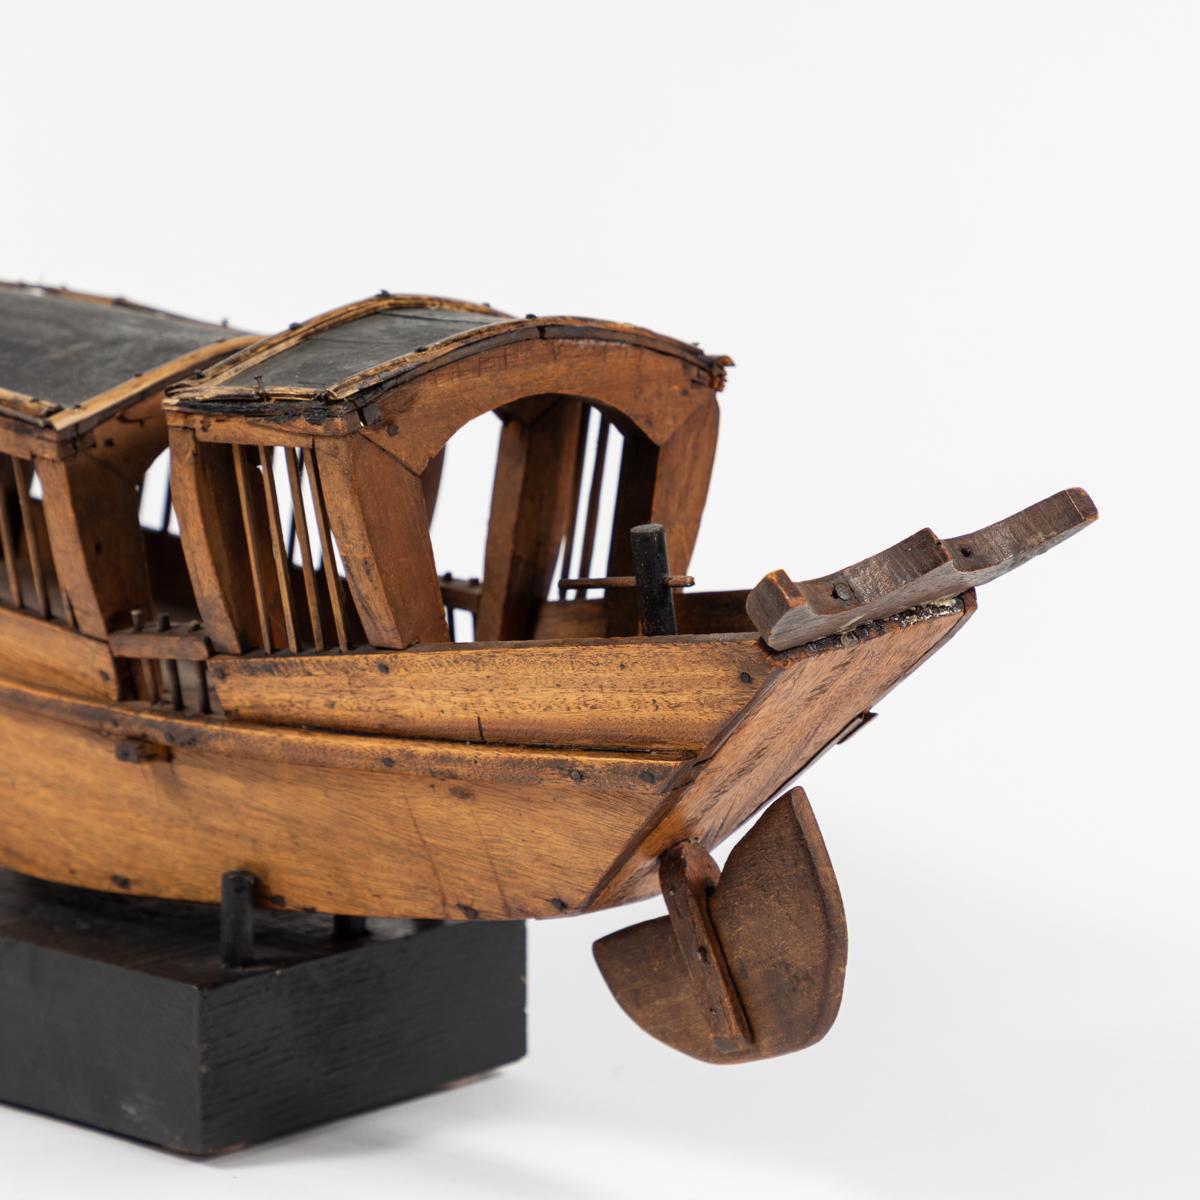 Folk Art Rustic Belgian Wooden Boat